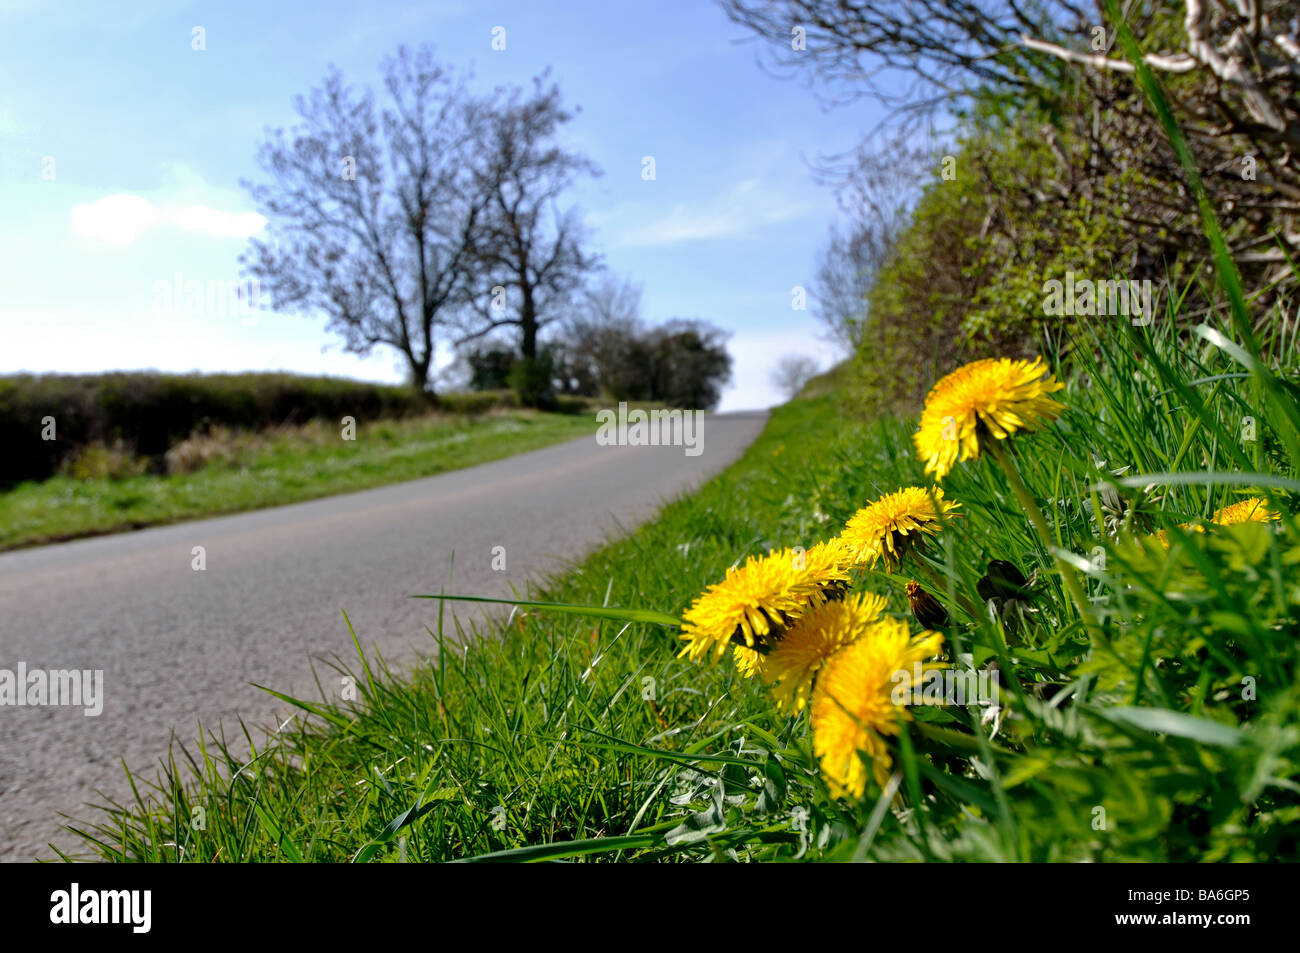 Dandelions growing on roadside verge, UK Stock Photo